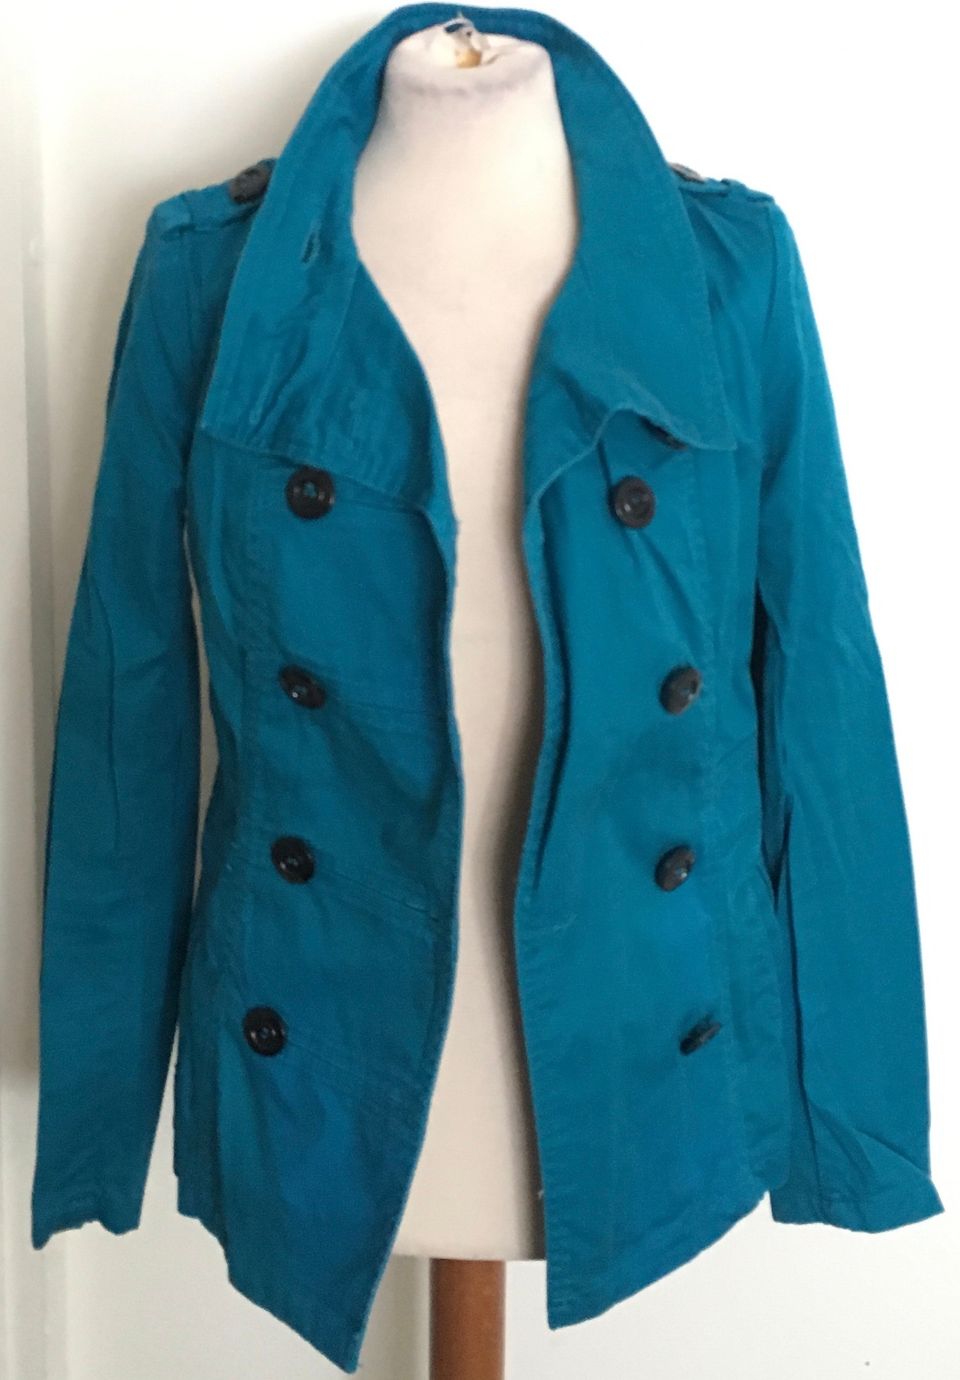 H&M sinivihreä tumma turkoosi takki 38